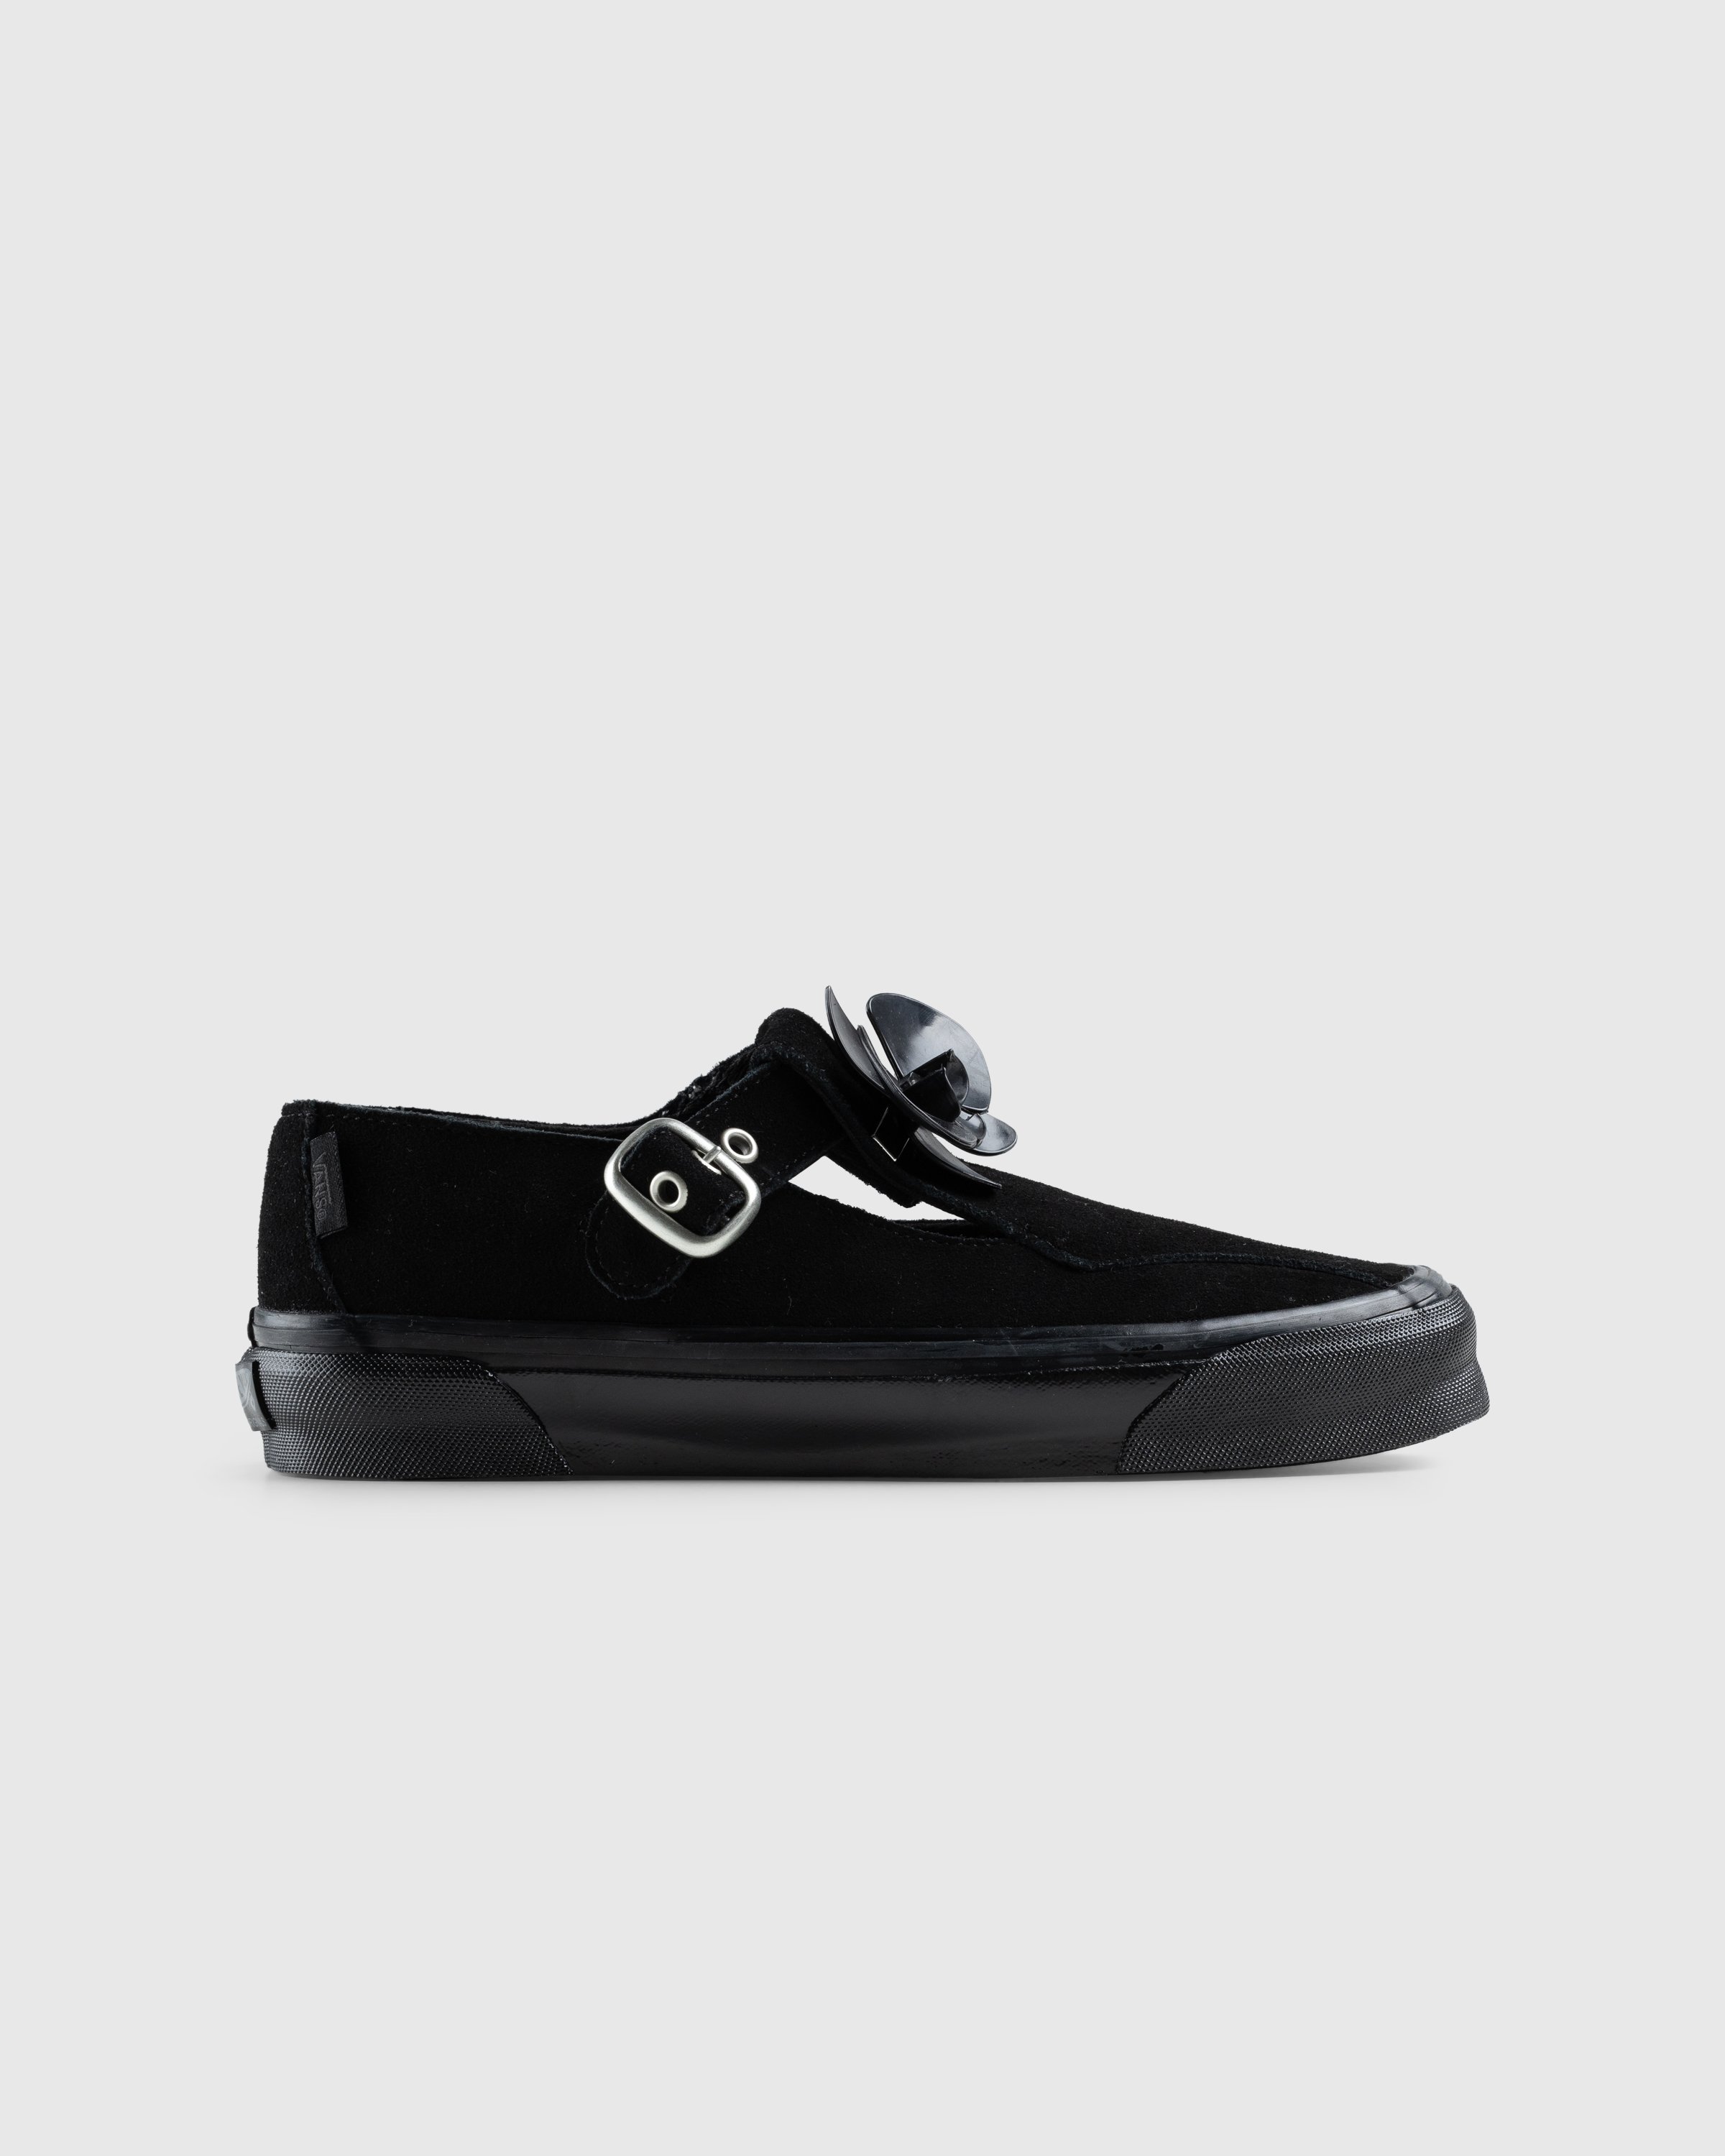 Vans - OG Style 93 LX Black - Footwear - Black - Image 1